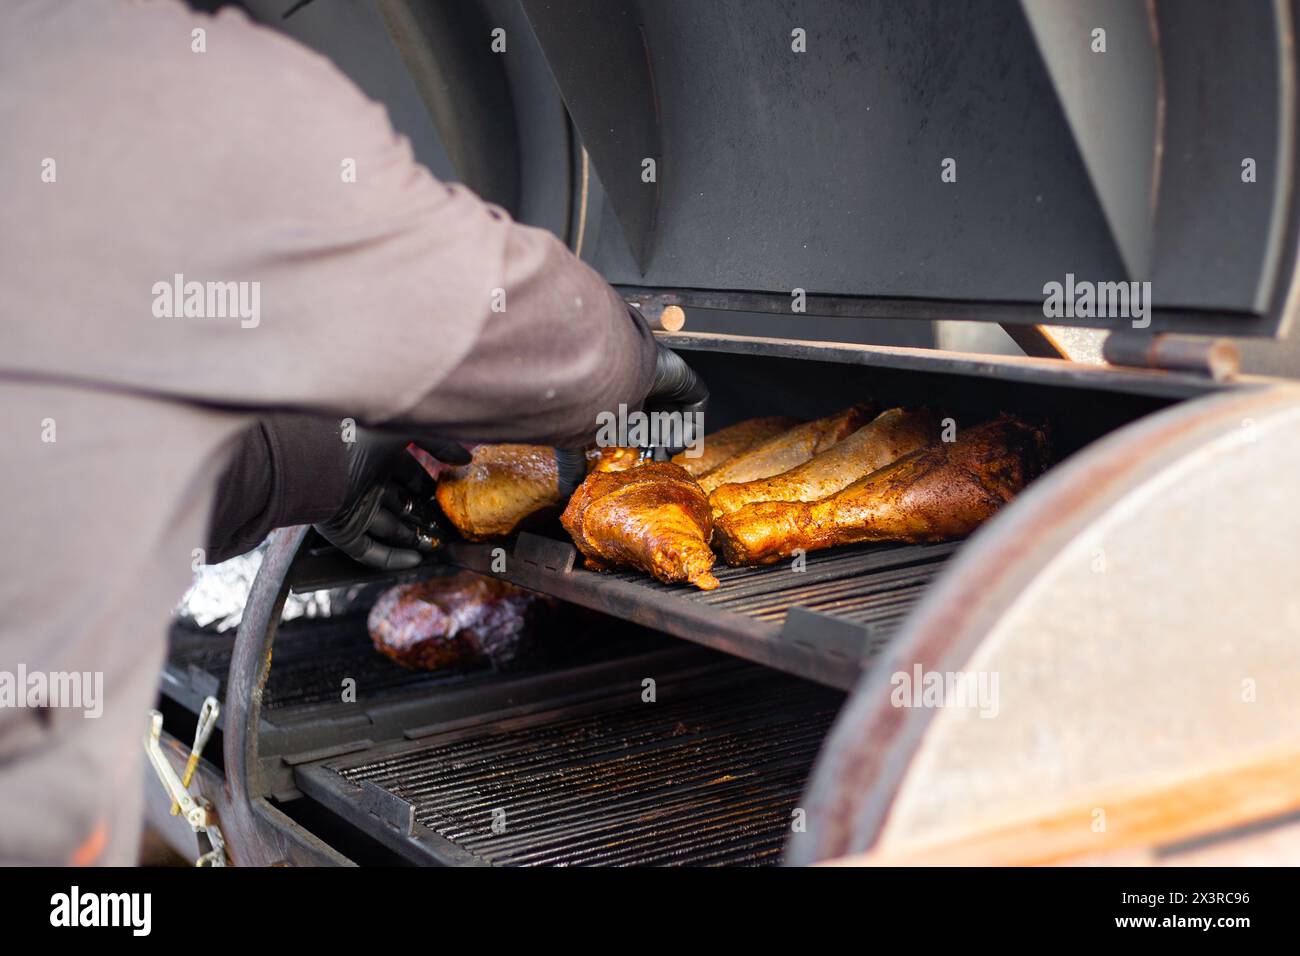 Les cuisses de dinde sont cuites sur un grill professionnel. Le processus de préparation de la viande pour un pique-nique. Banque D'Images